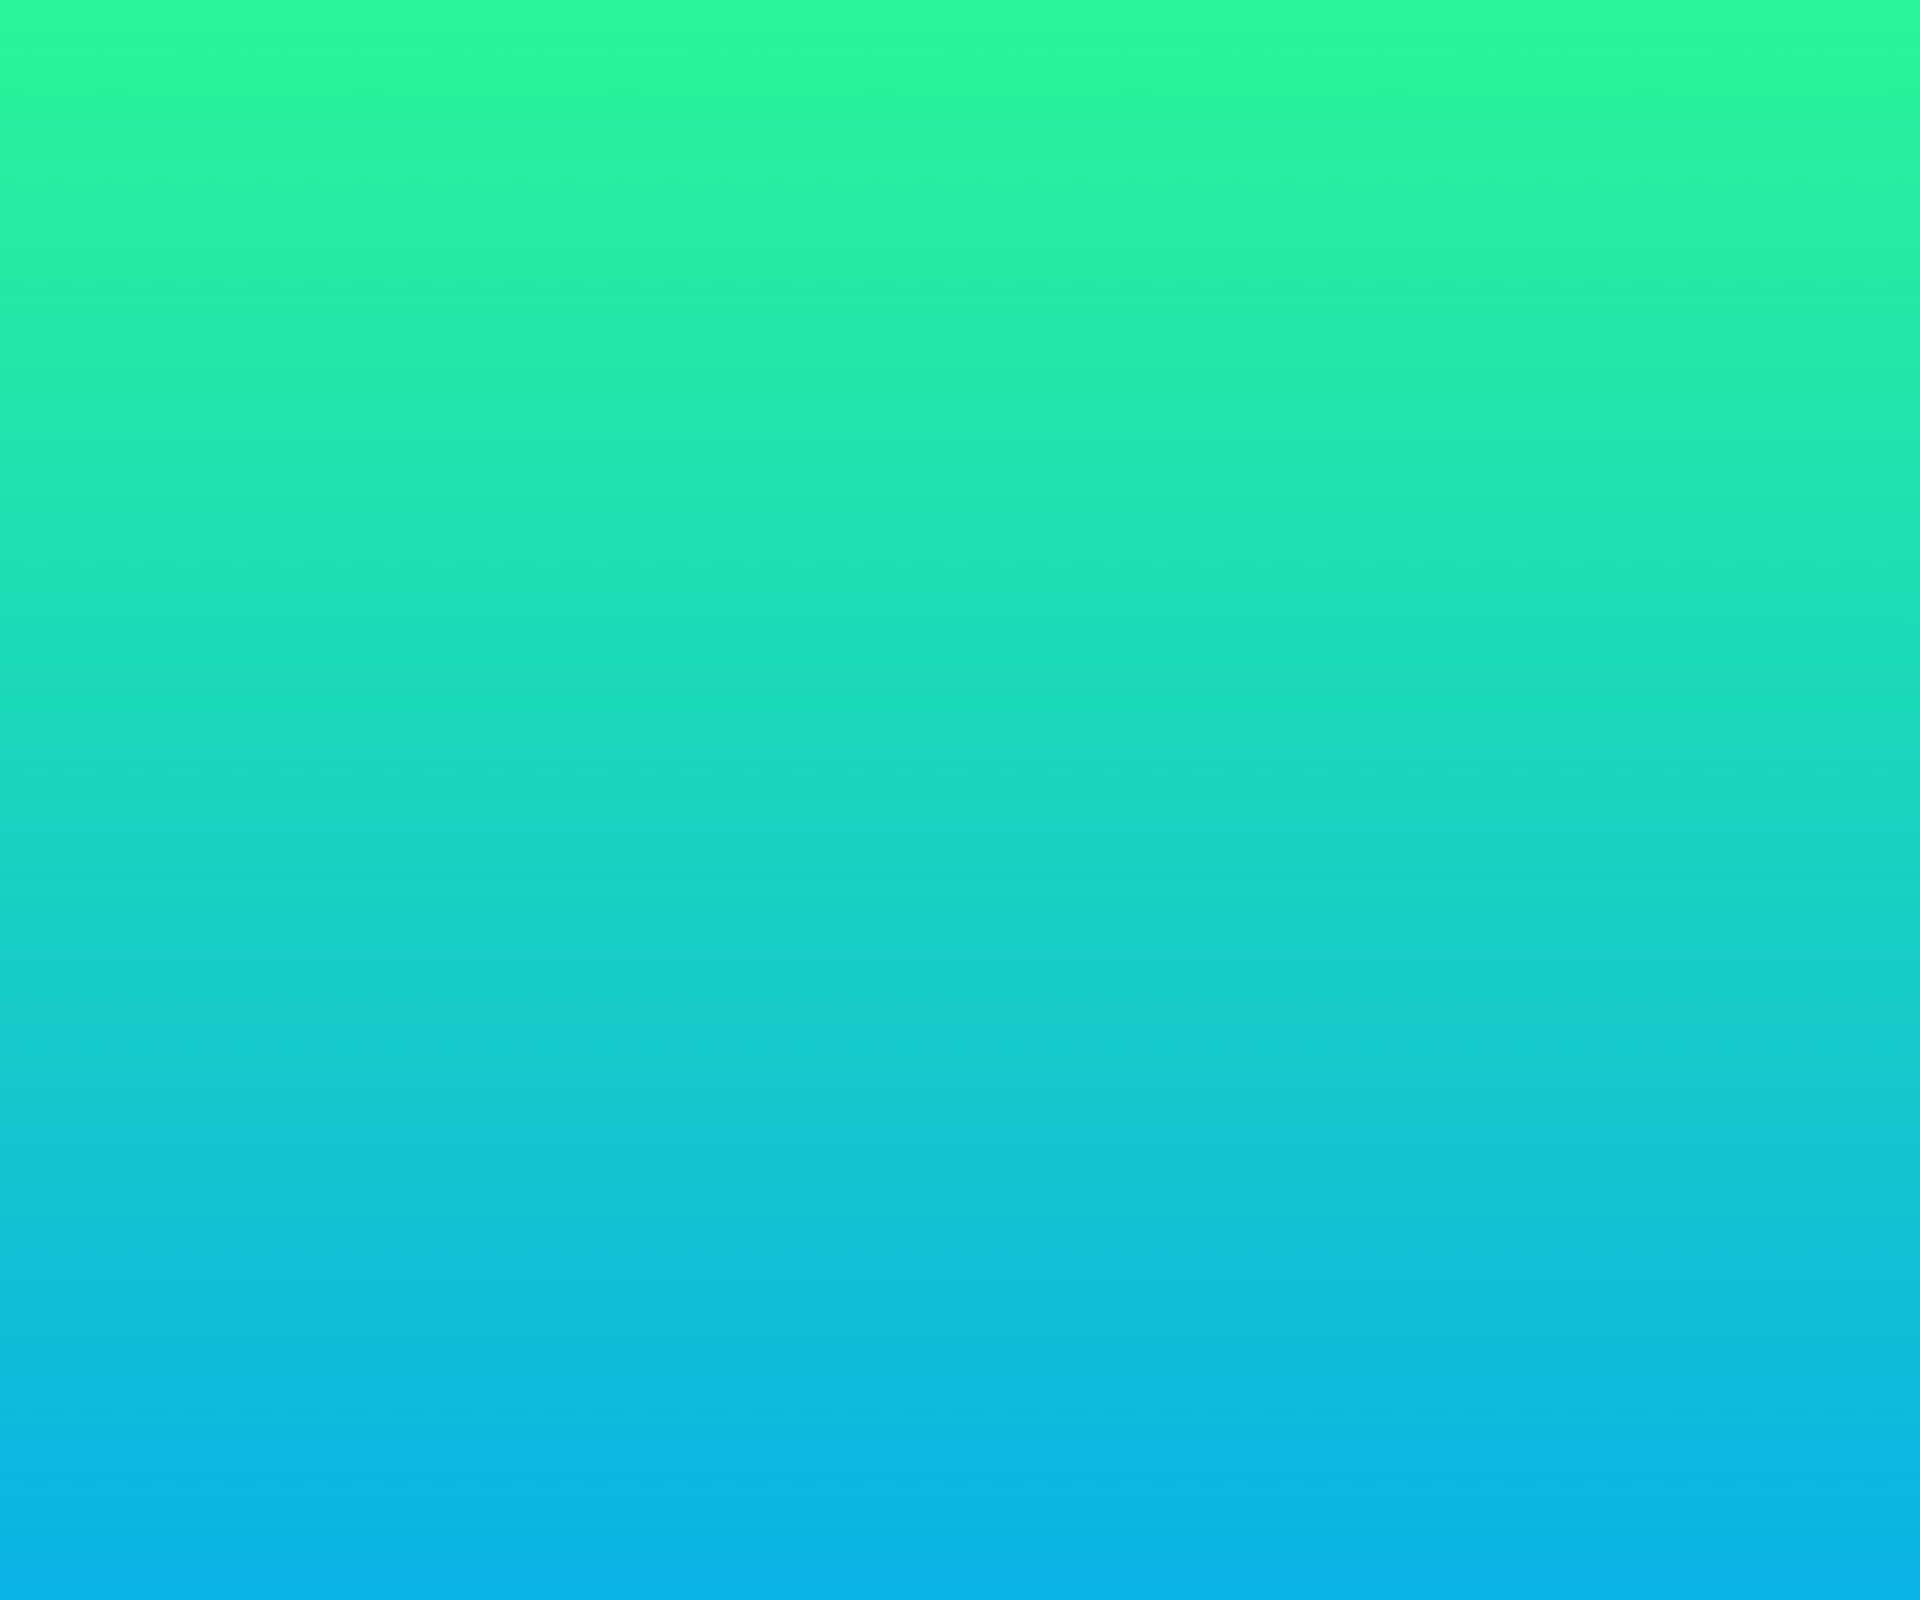 pastel turquoise background